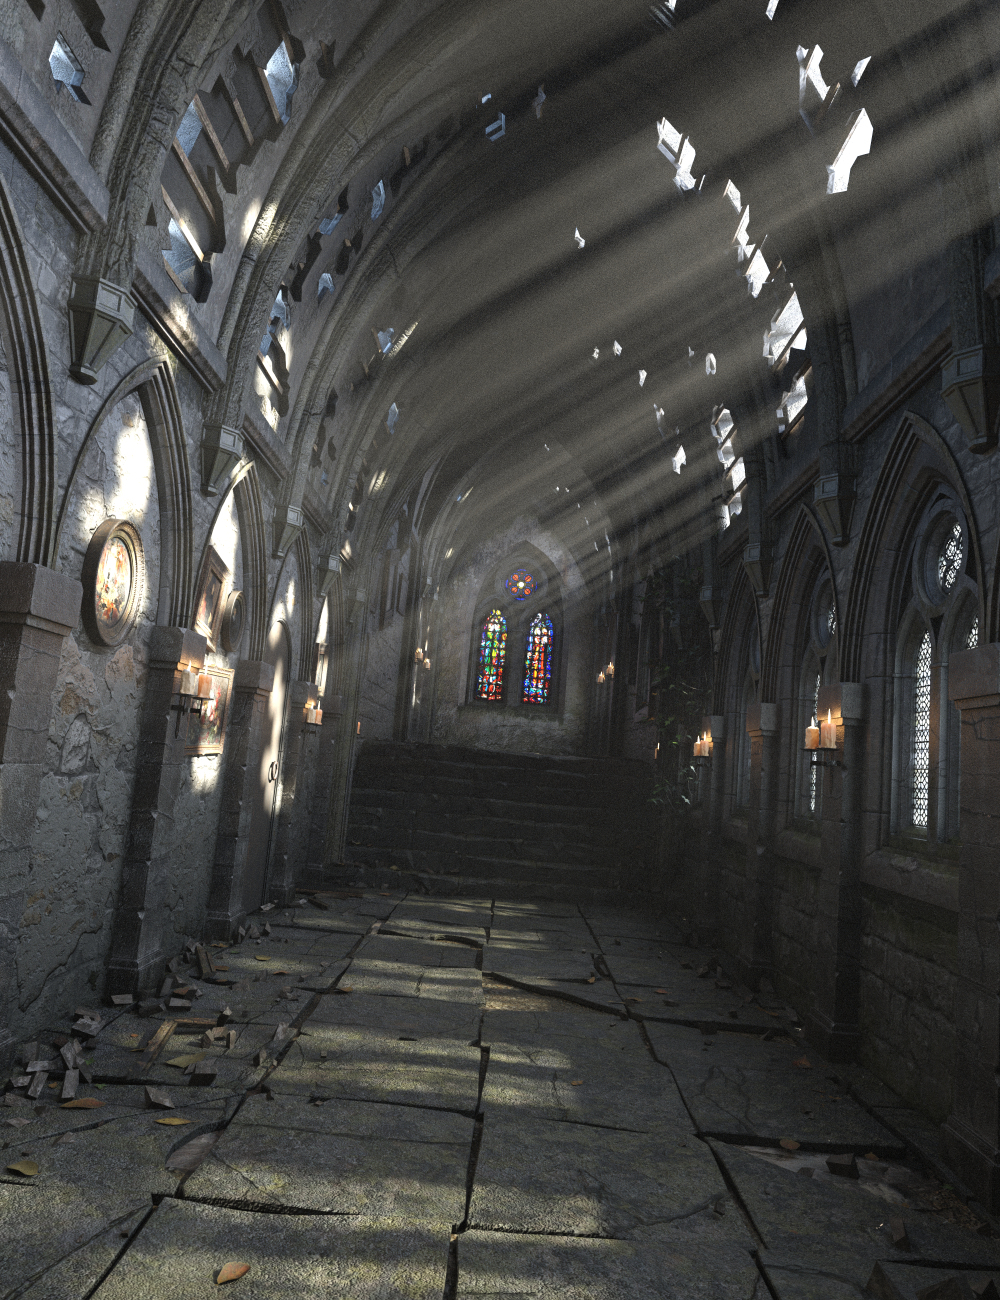 The Long Gallery Ruin by: Merlin Studios, 3D Models by Daz 3D